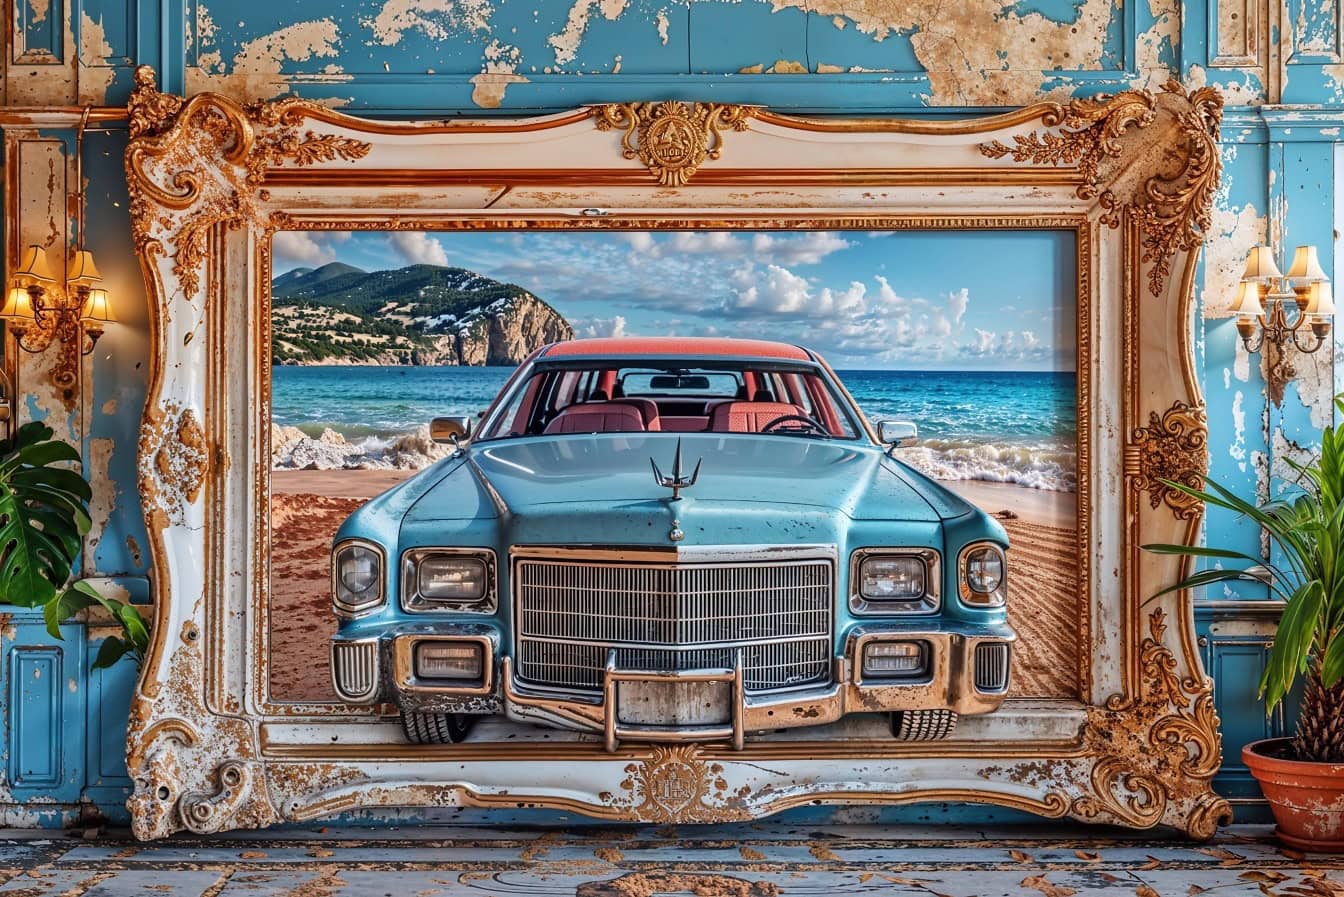 고전적인 미국 캐딜락 자동차의 대형 3D 그림이 오래된 빅토리아 시대 프레임의 벽에 걸려 있습니다